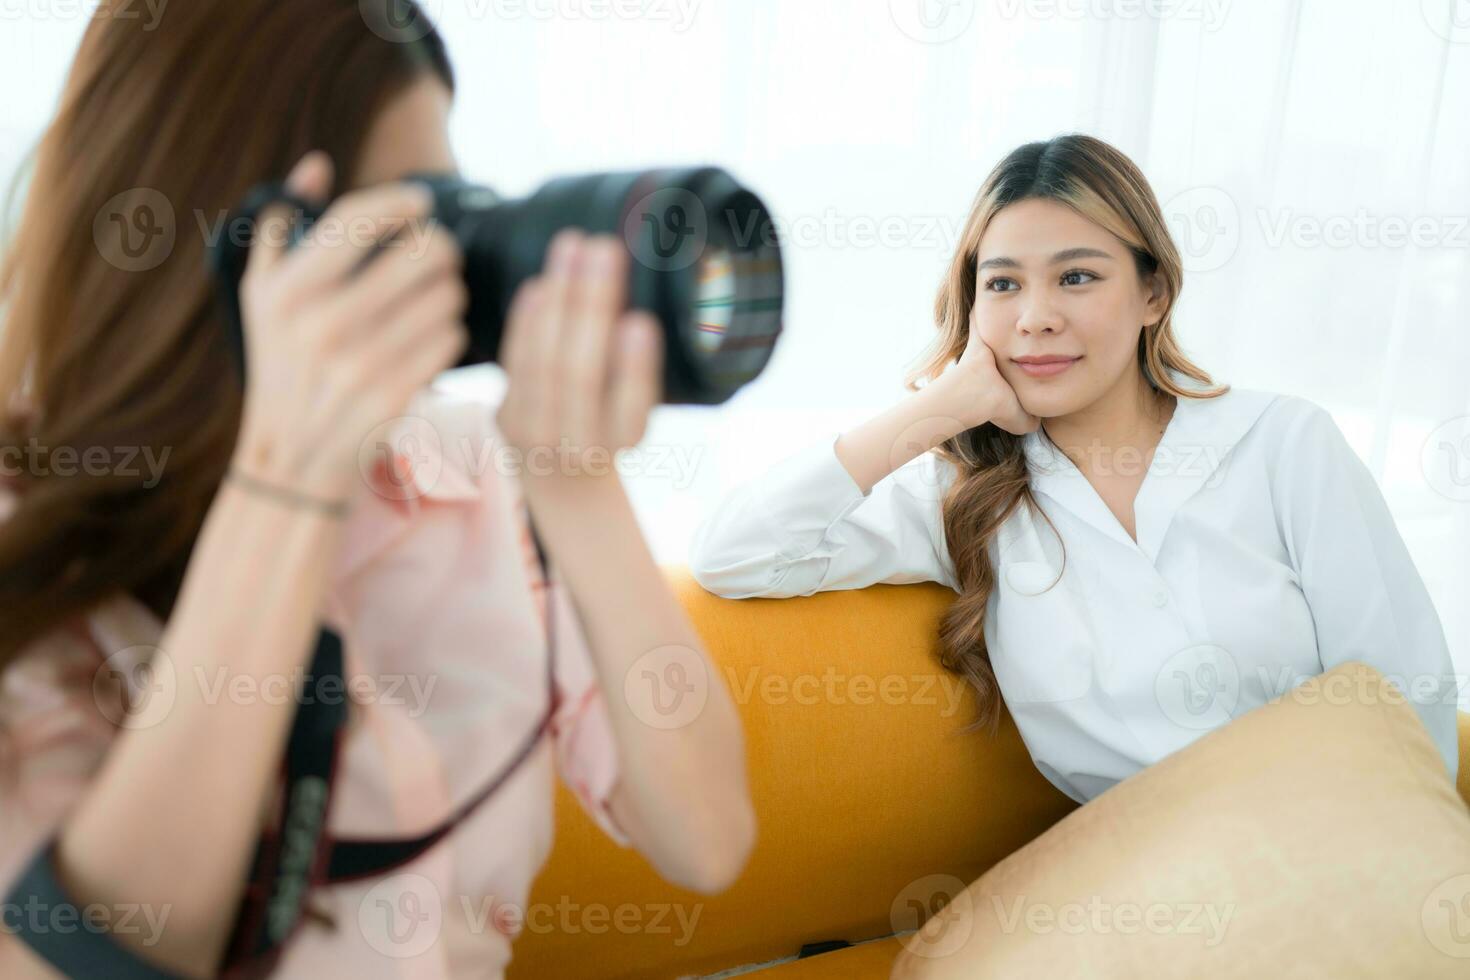 magnifique asiatique femme photographe prise image avec professionnel caméra à Accueil photo